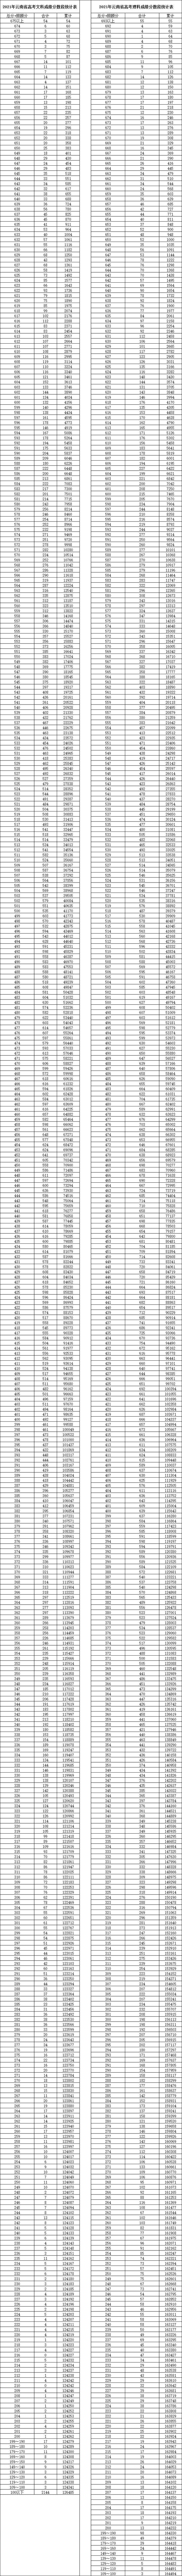 高考分数线最高的省份排名     (全国高考分数线最高的省份排名)